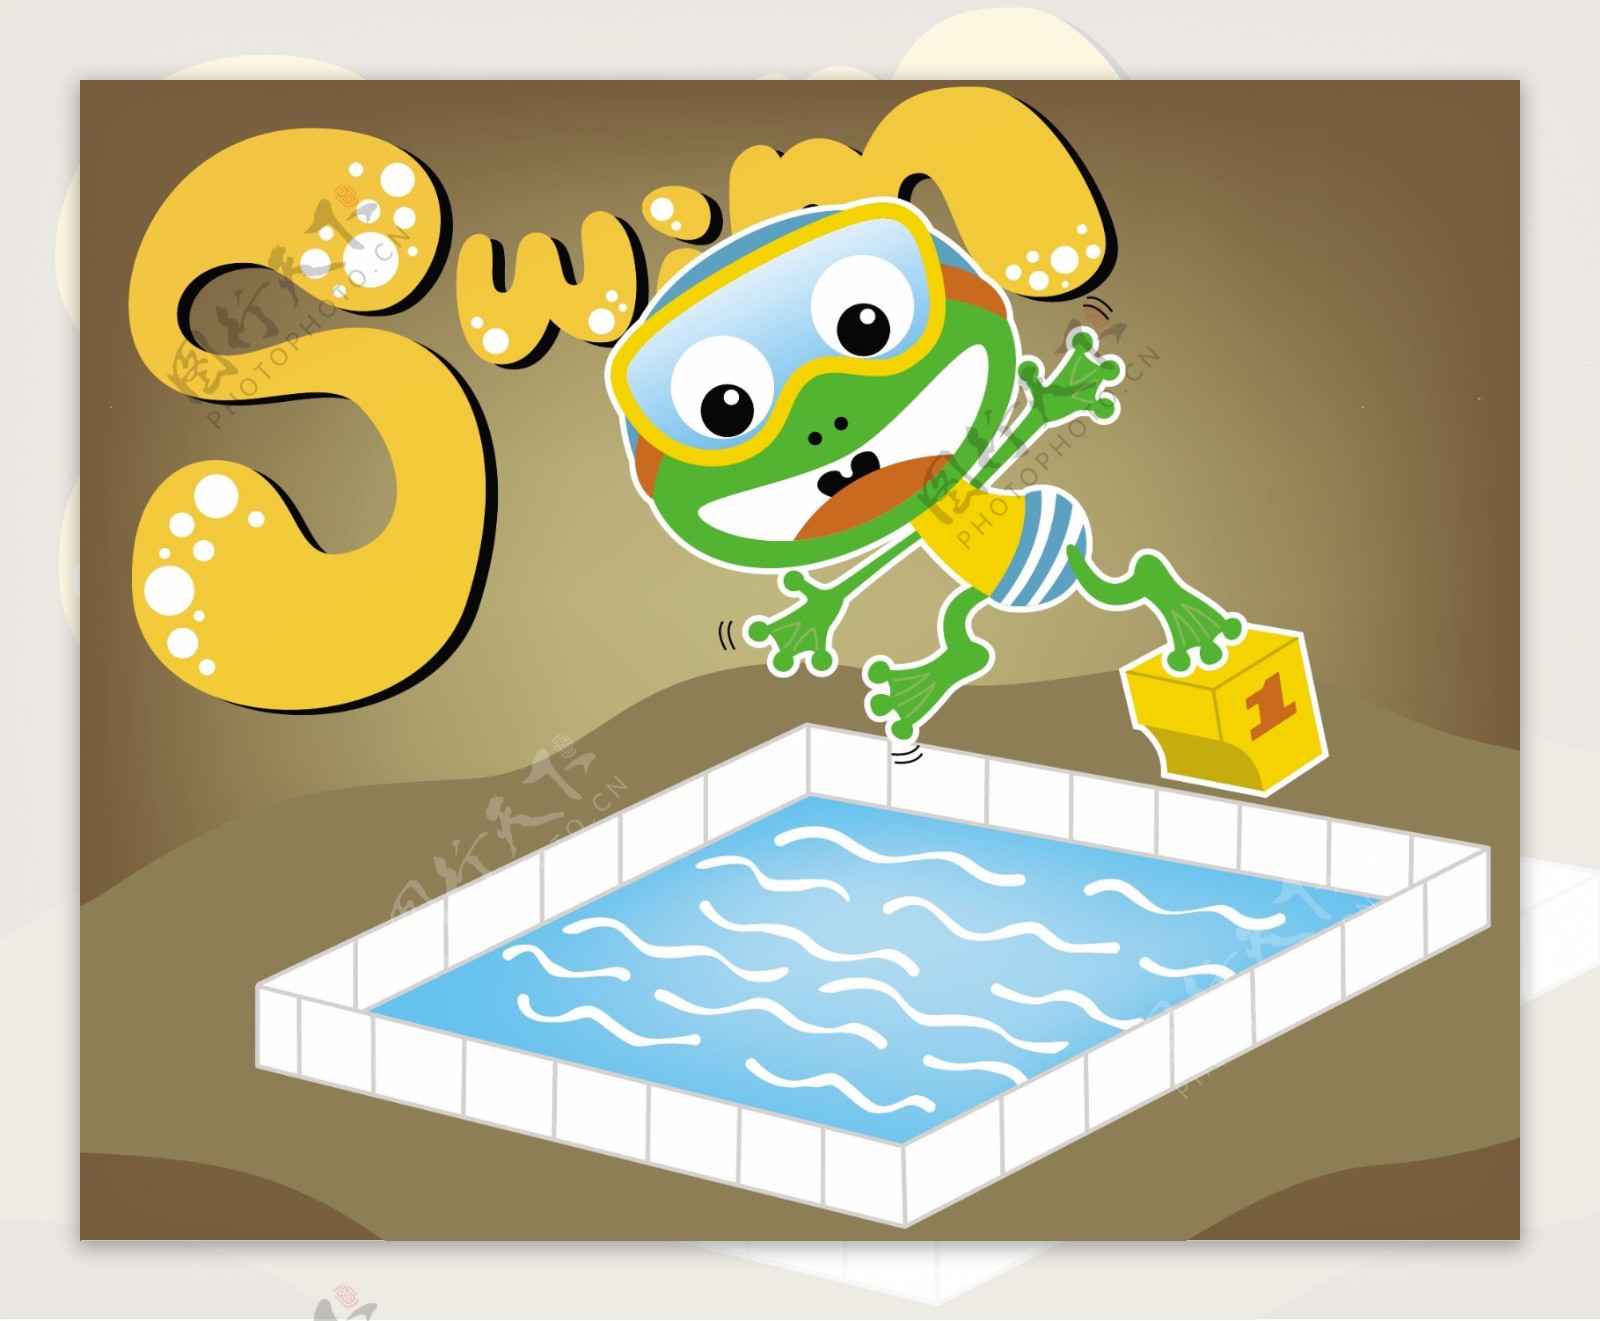 可爱绿色小青蛙儿童插画